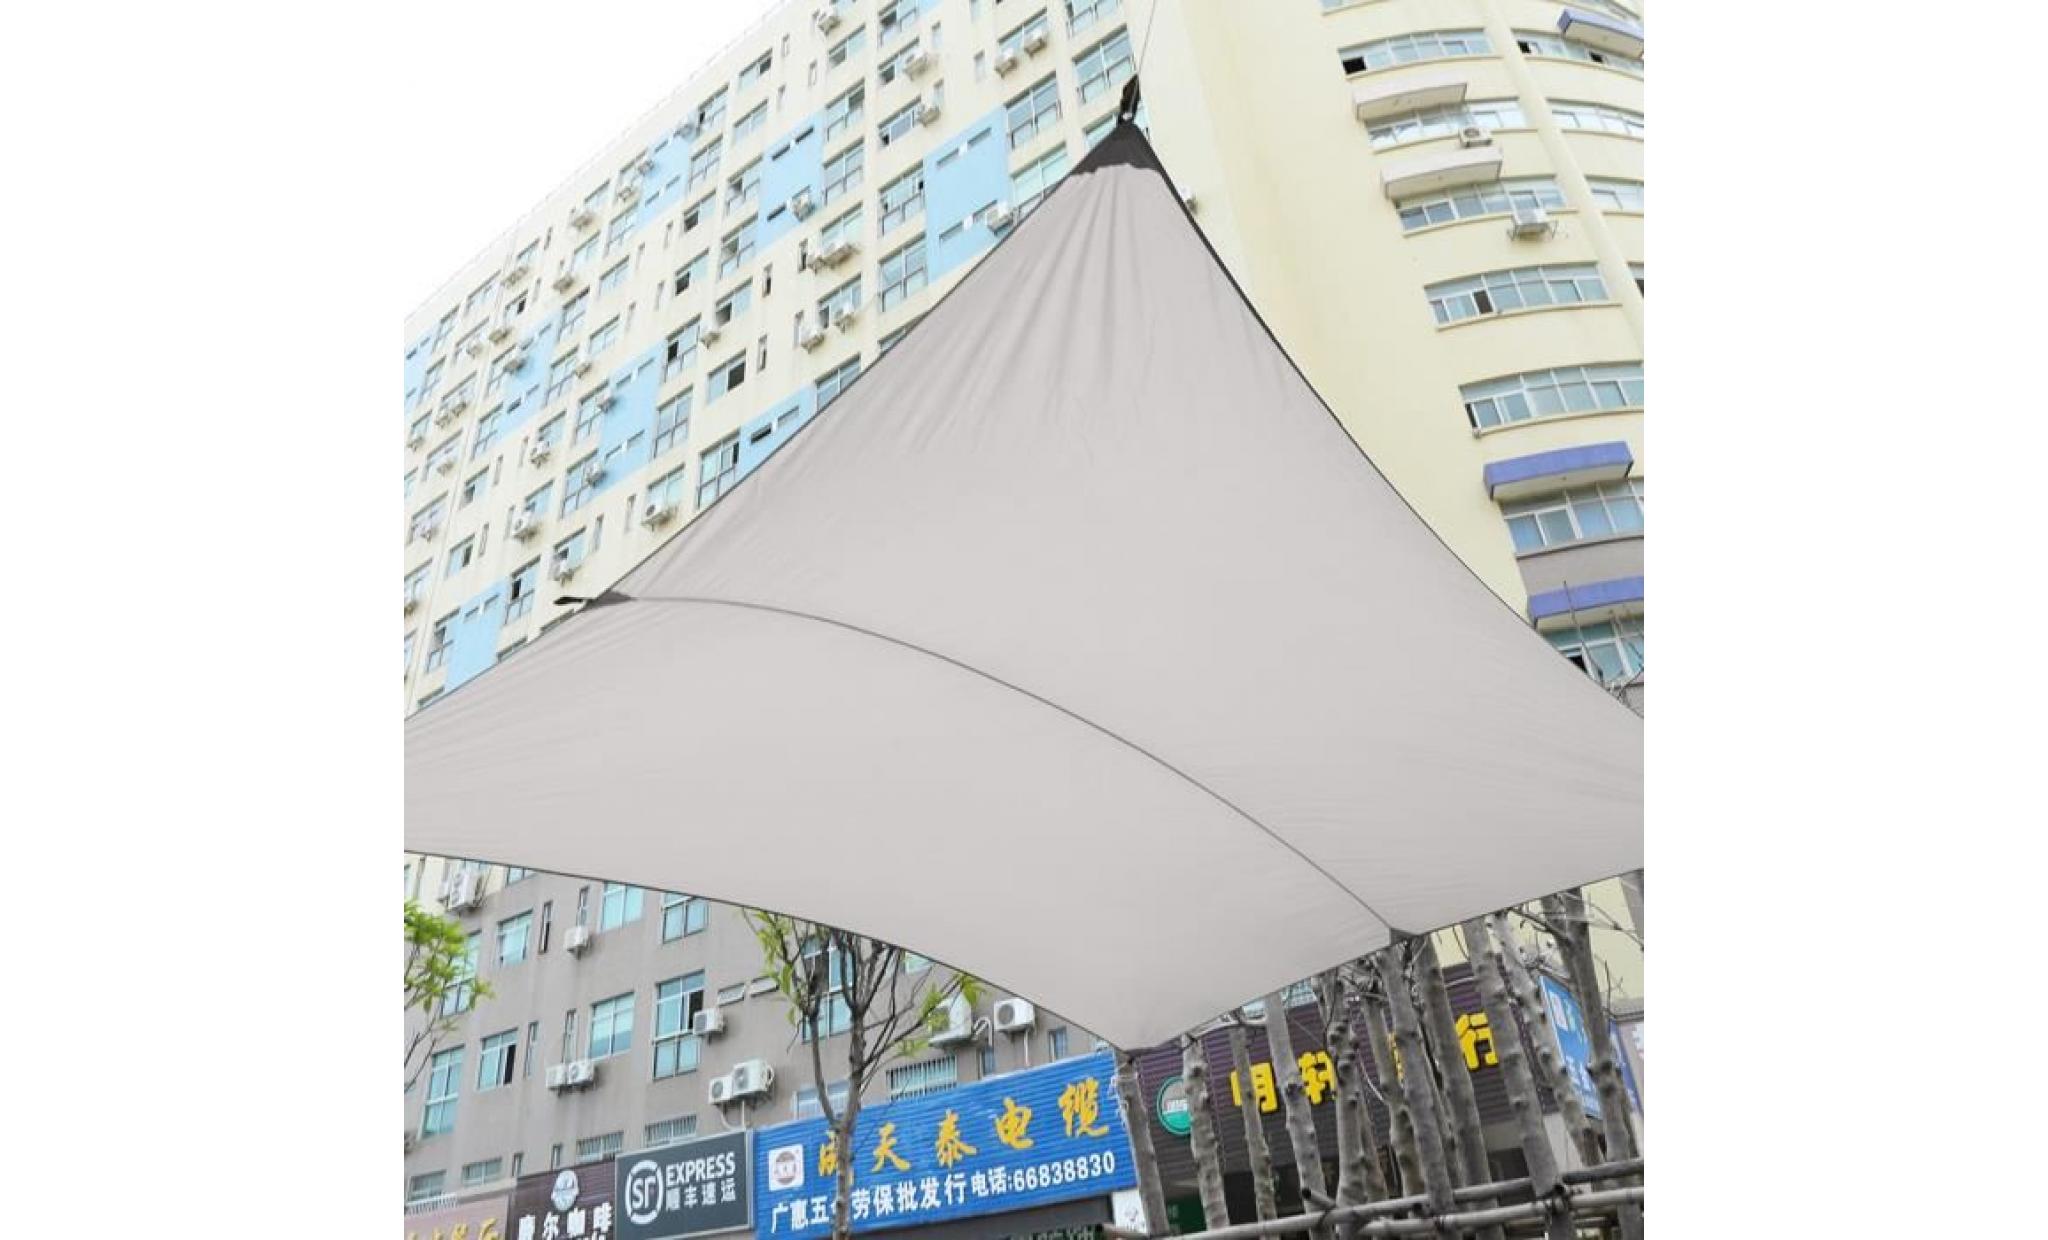 4.5x5m toile solaire voile d'ombrage imperméable beige blanc